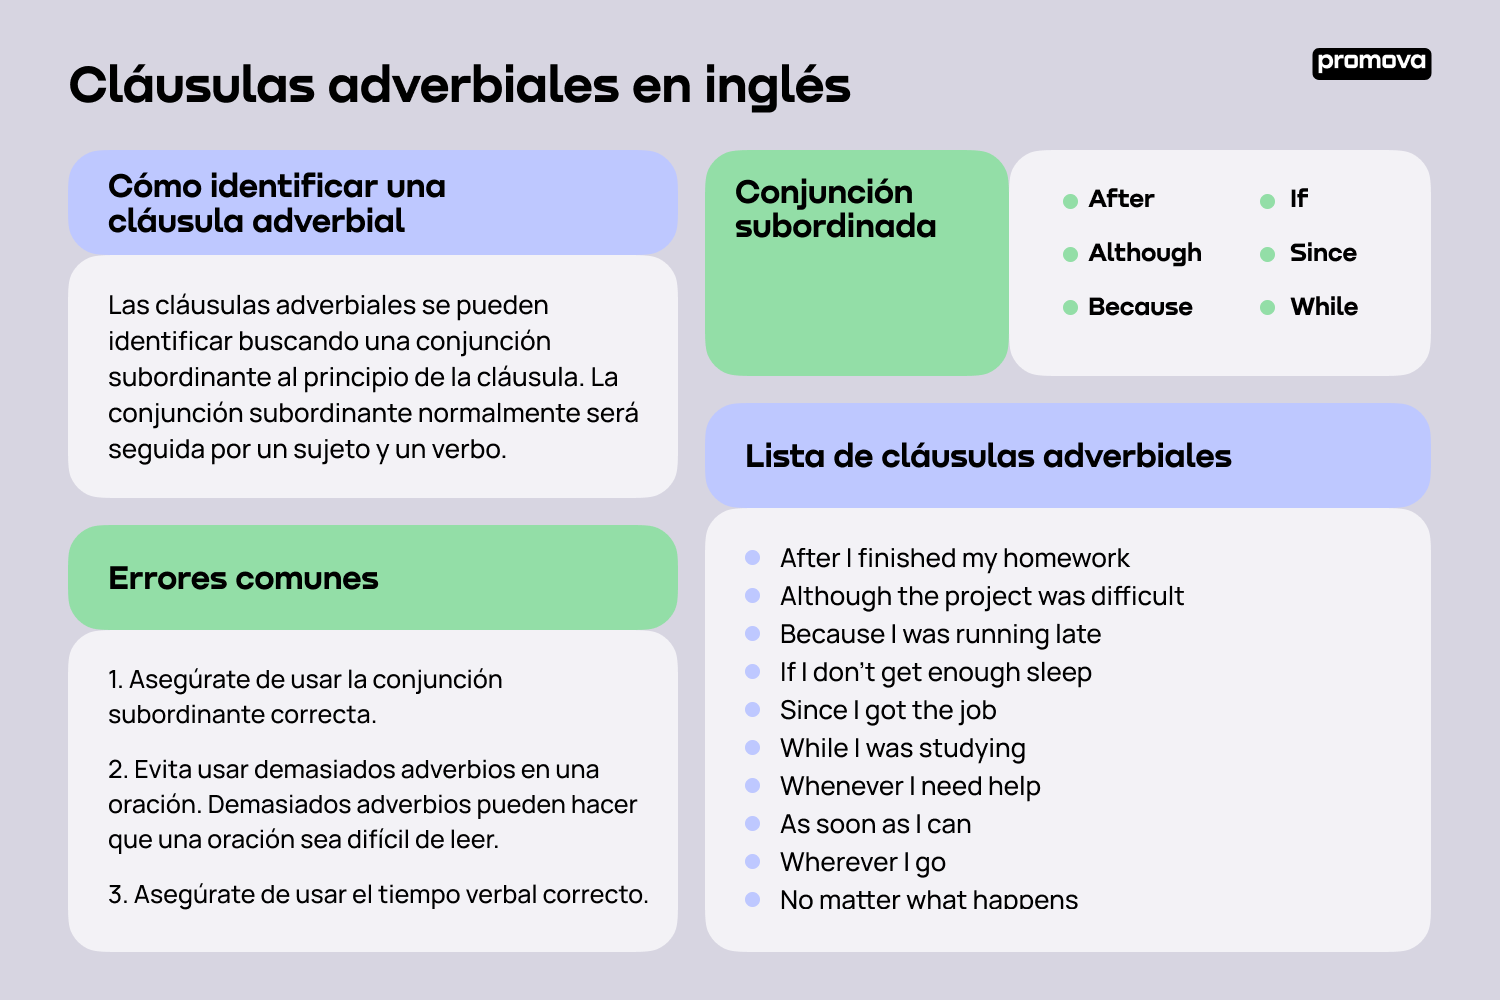 Explorando las cláusulas adverbiales en inglés: Conceptos y ejemplos